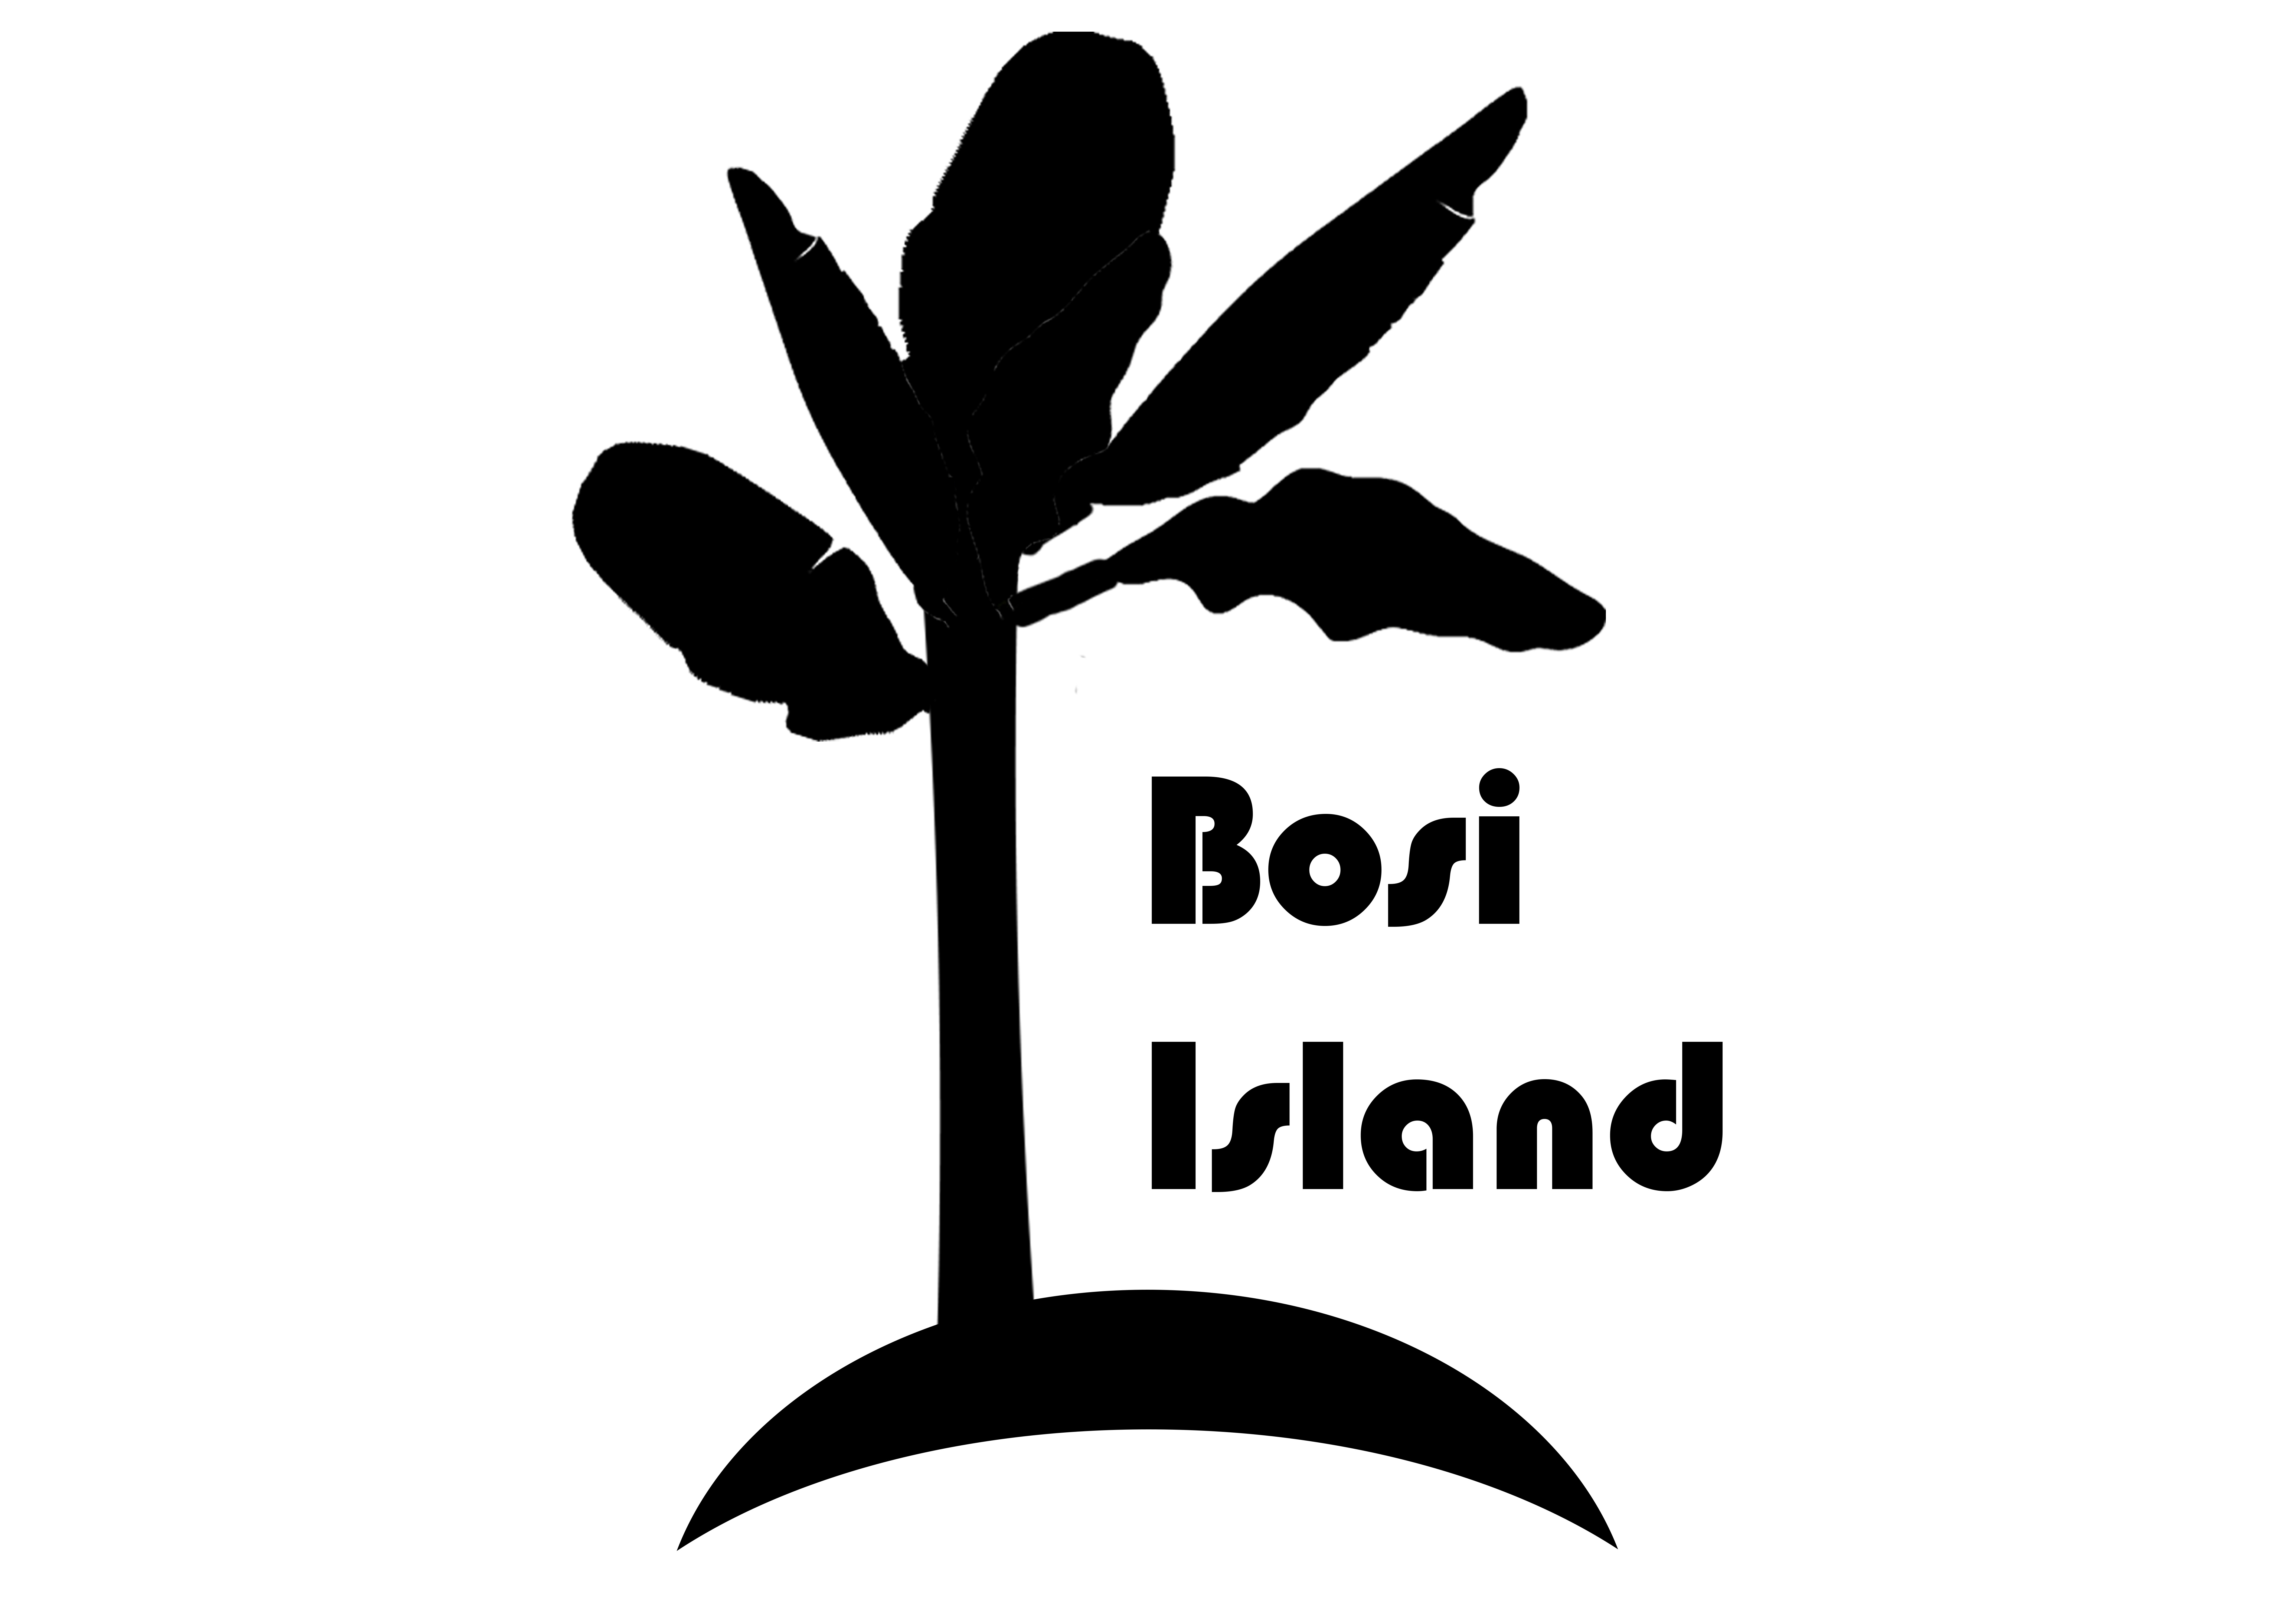 Bosi-Island